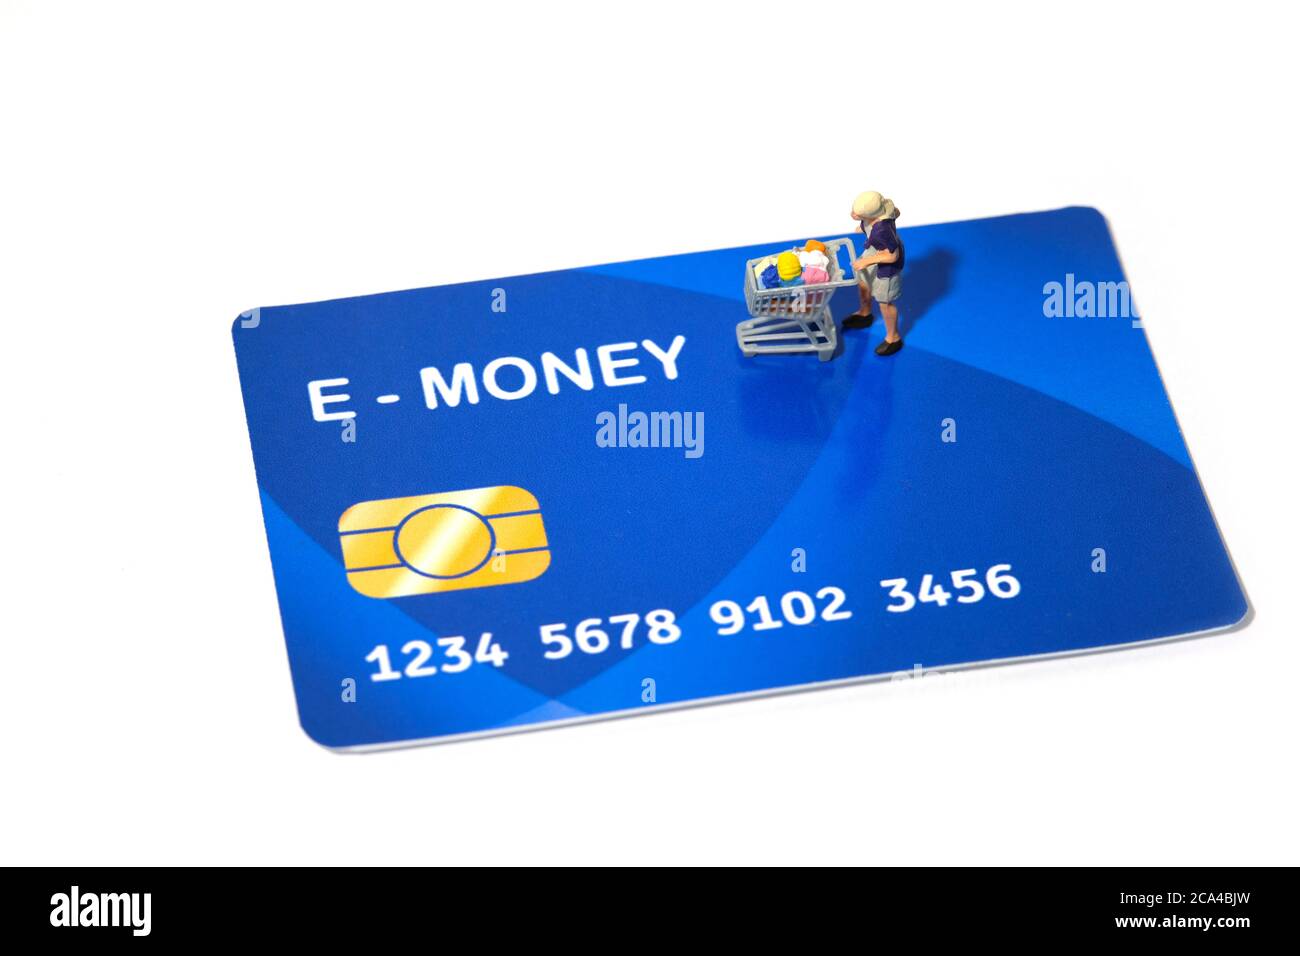 Kontaktlose Zahlung. Frauen gehen einkaufen und zahlen mit elektronischem Geld (E-Geld). Miniatur Menschen Figuren Spielzeug konzeptionelle Fotografie. Stockfoto